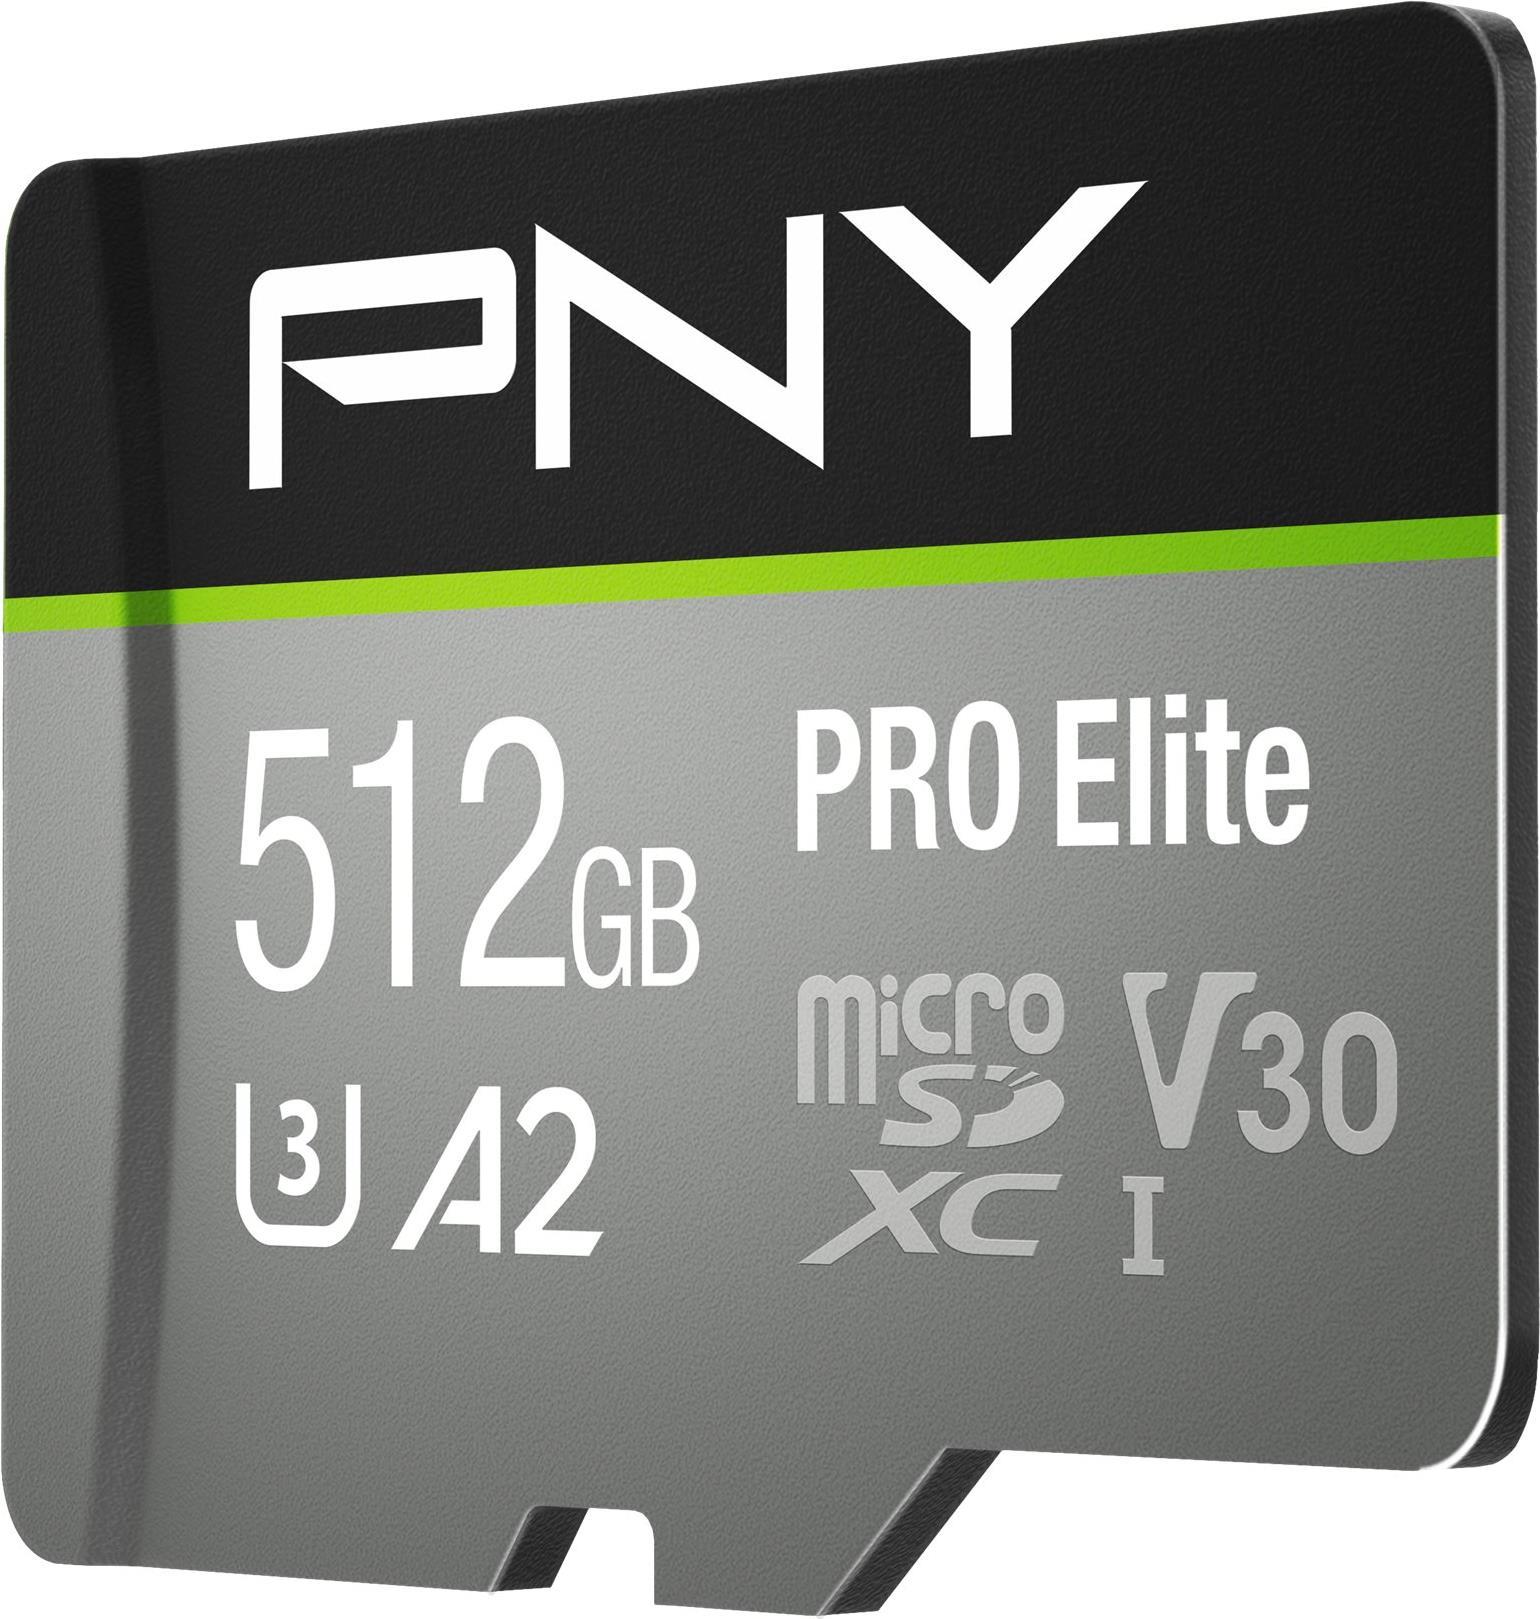 PNY PRO Elite microSDXC 512GB Speicherkarte Klasse 10 (P-SDUX512U3100PRO-GE)